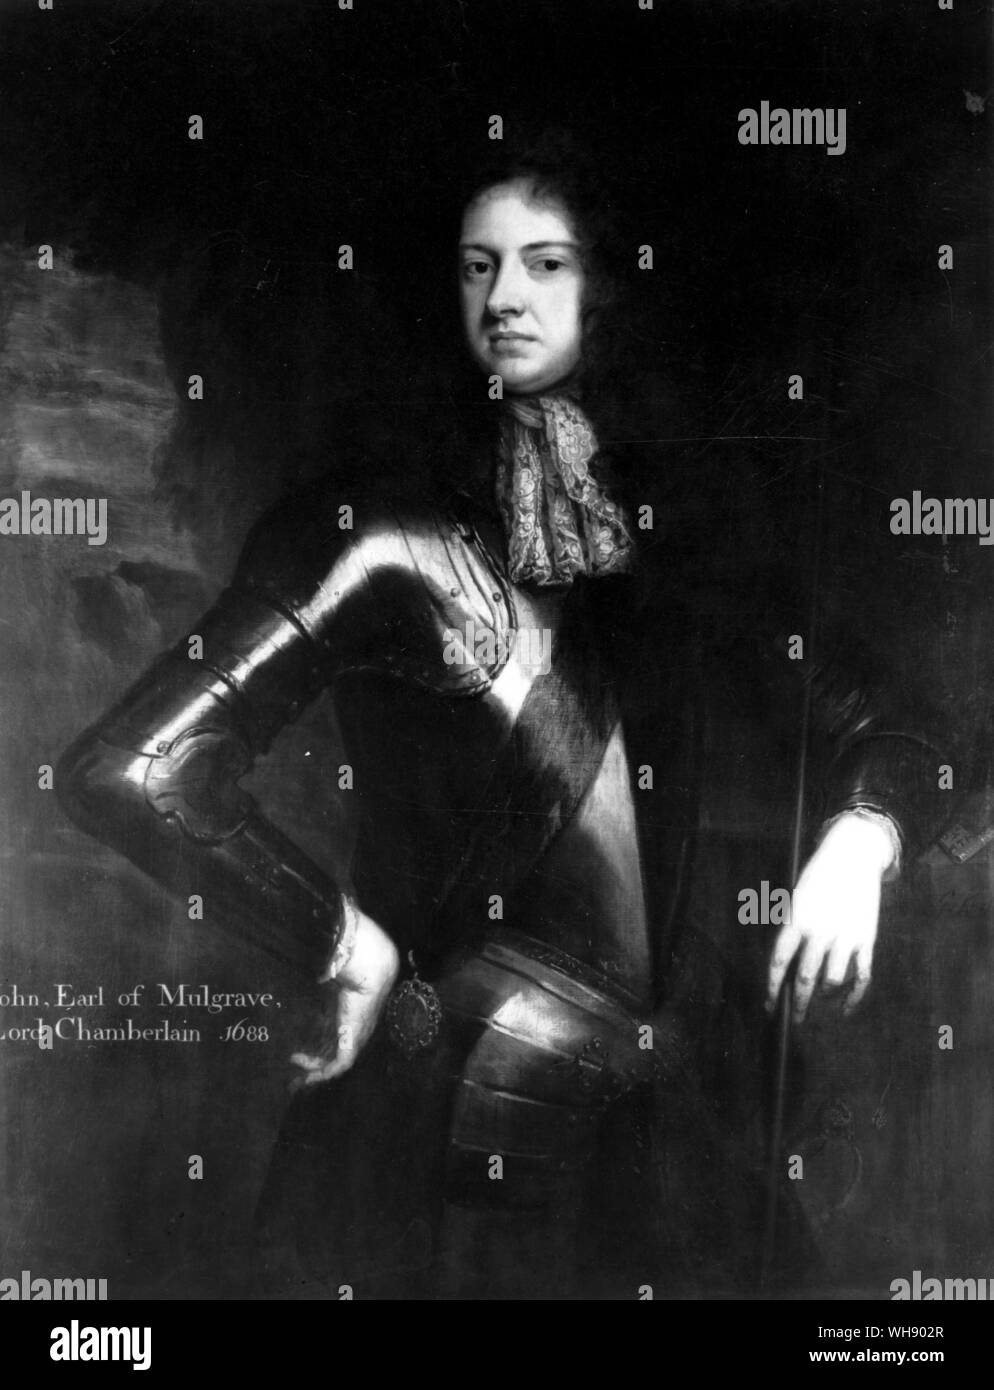 'Monster All-Pride', John, Earl of Mulgrave - Lord Chamberlain 1688 Stock Photo